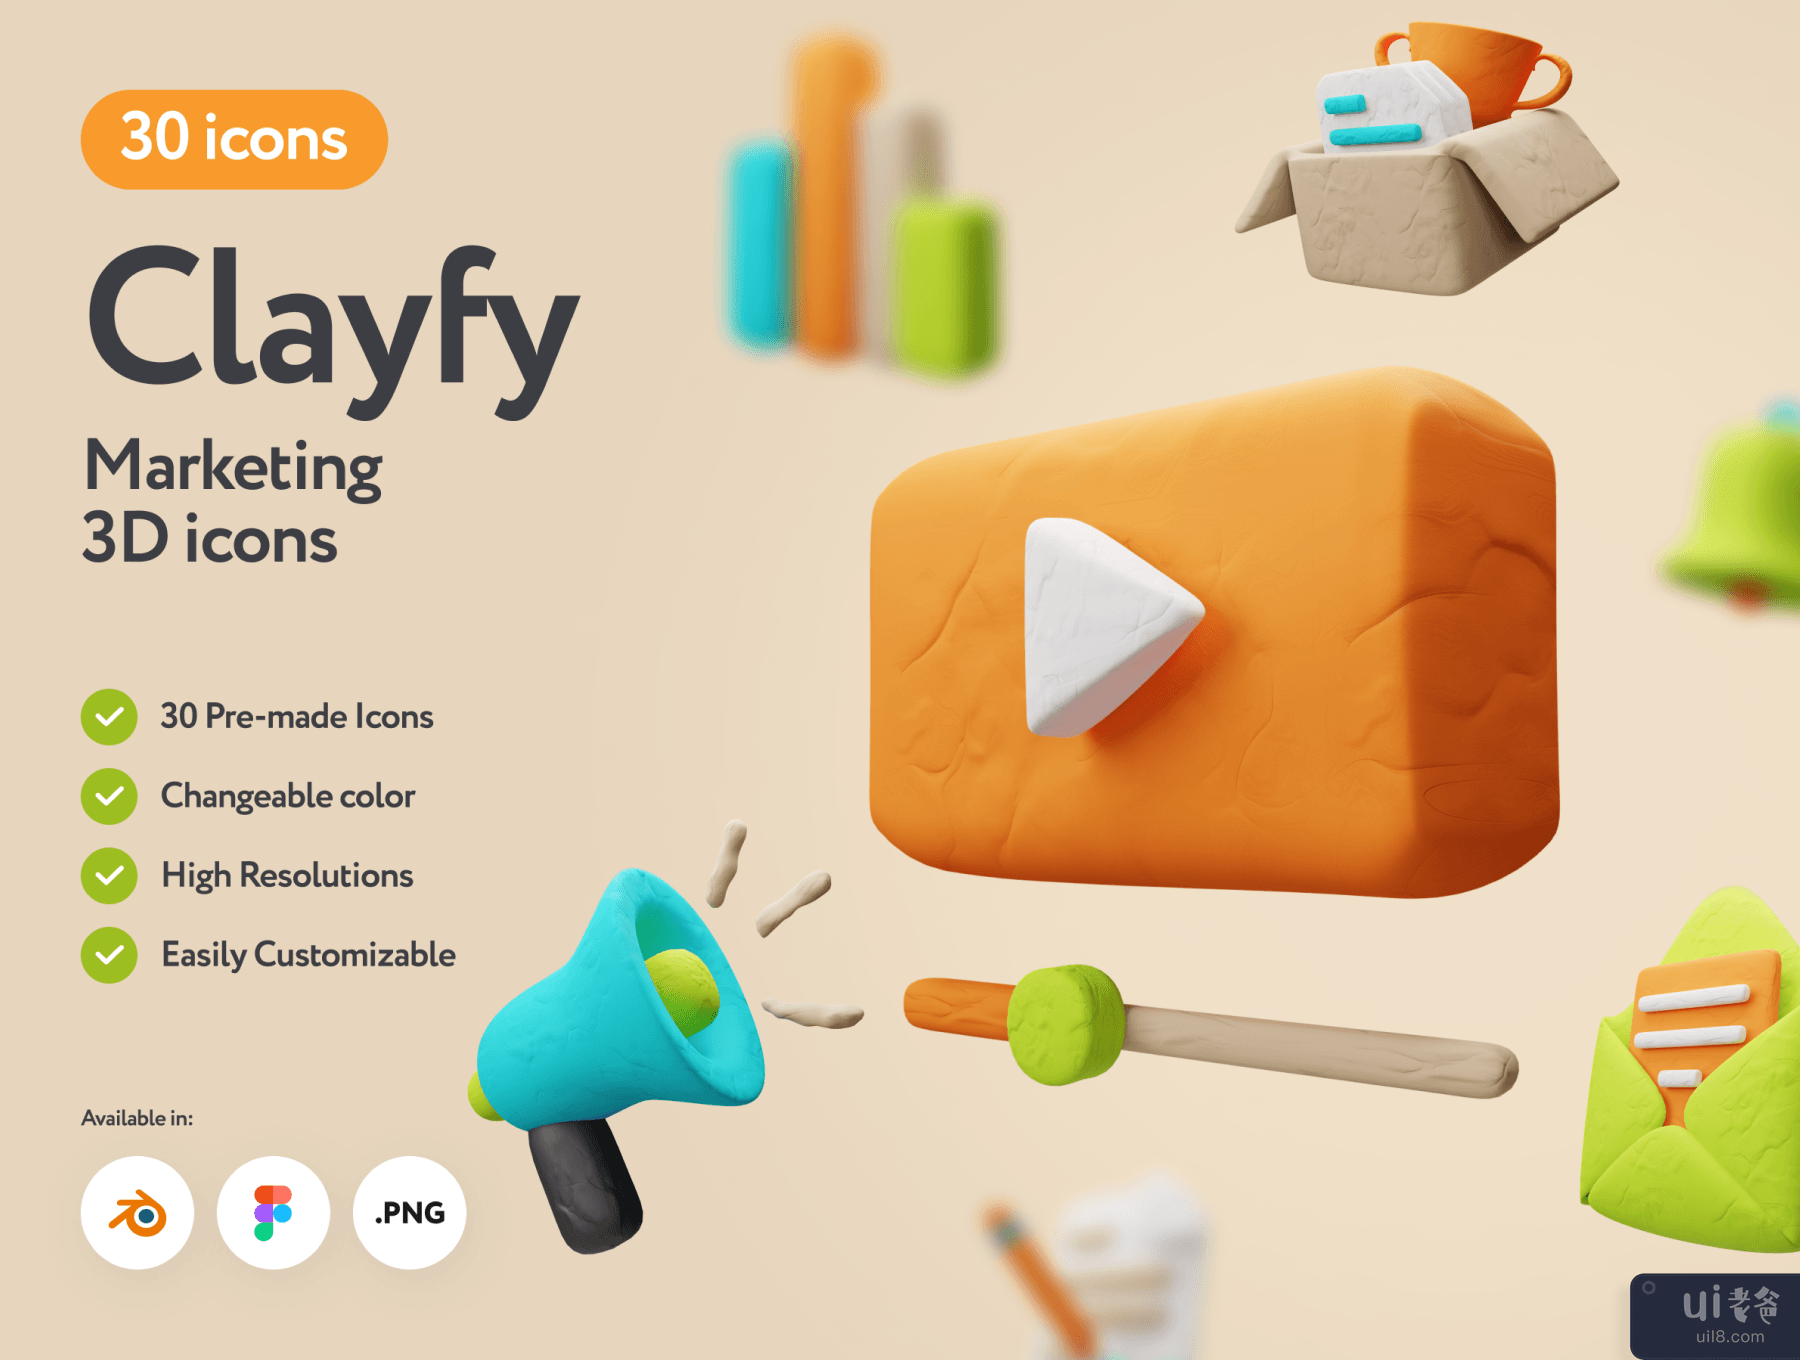 Clayfy 营销 3D 图标 (Clayfy Marketing 3D Icons)插图5